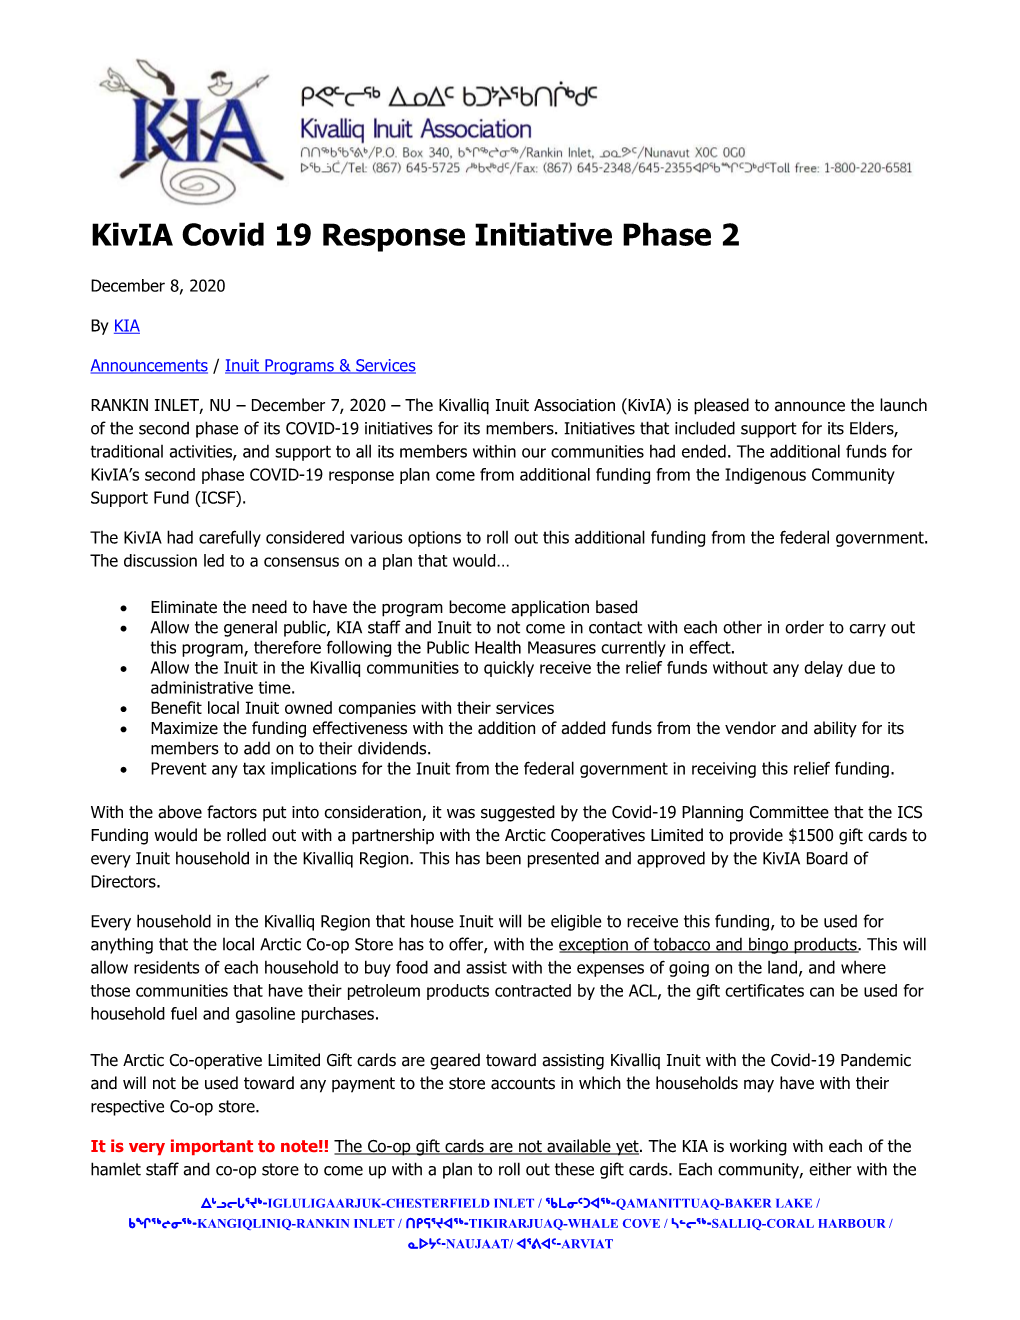 Kivia Covid 19 Response Initiative Phase 2